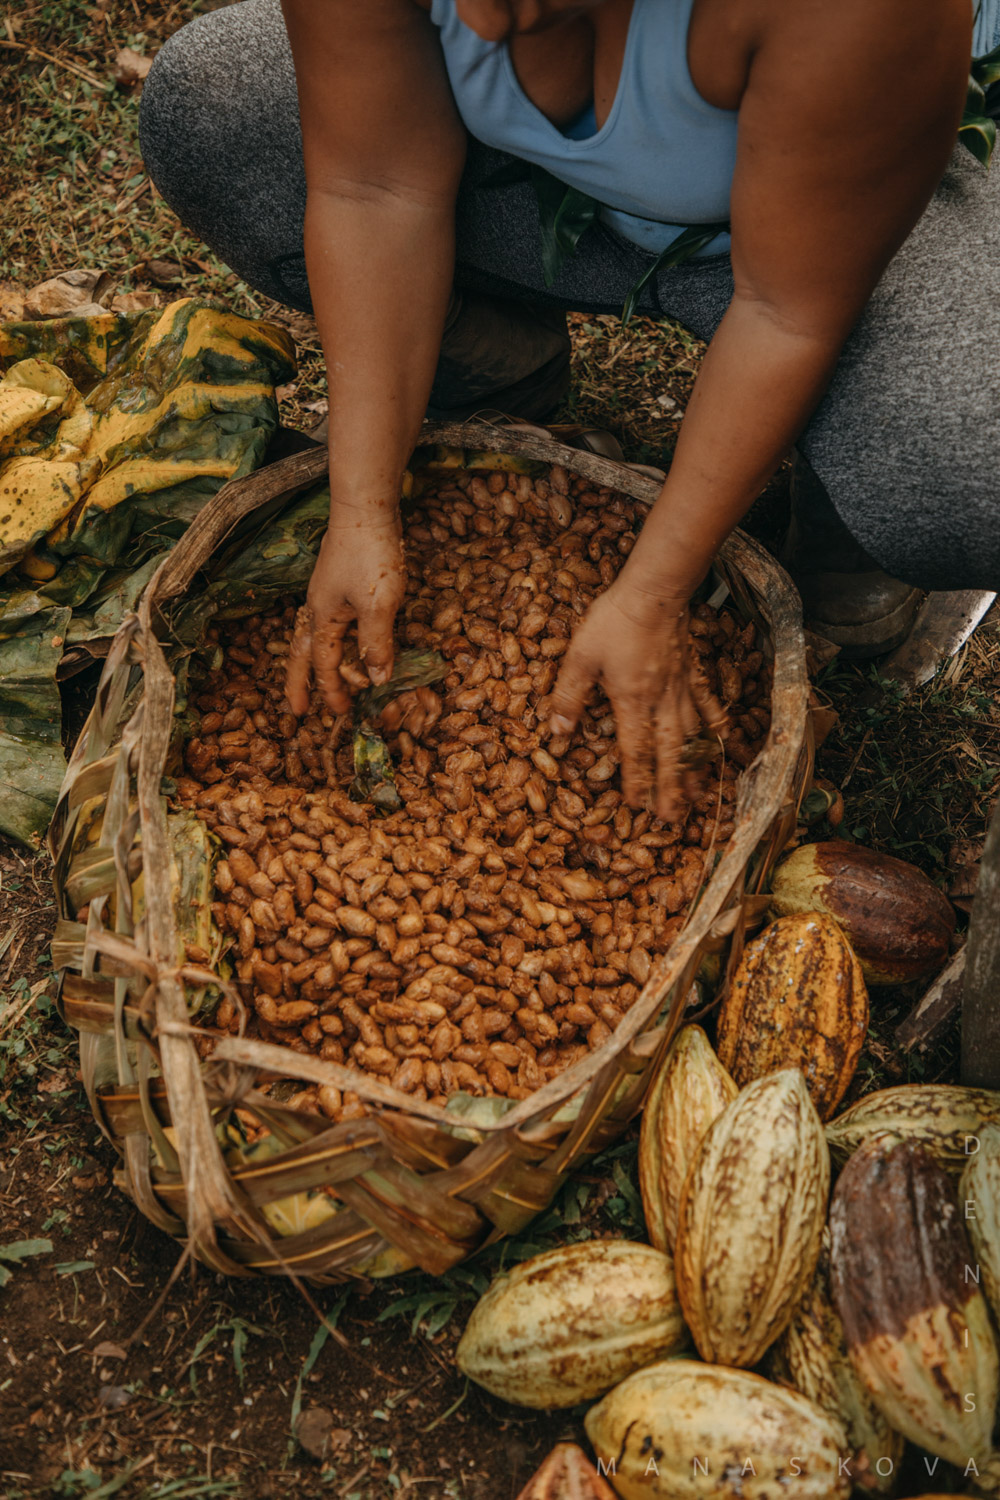 KokoSamoa-Cacao-Samoa-organicfarm-healthyeating-farmer-agriculture-documentary-photography-documentaryfilm-organicfarming-